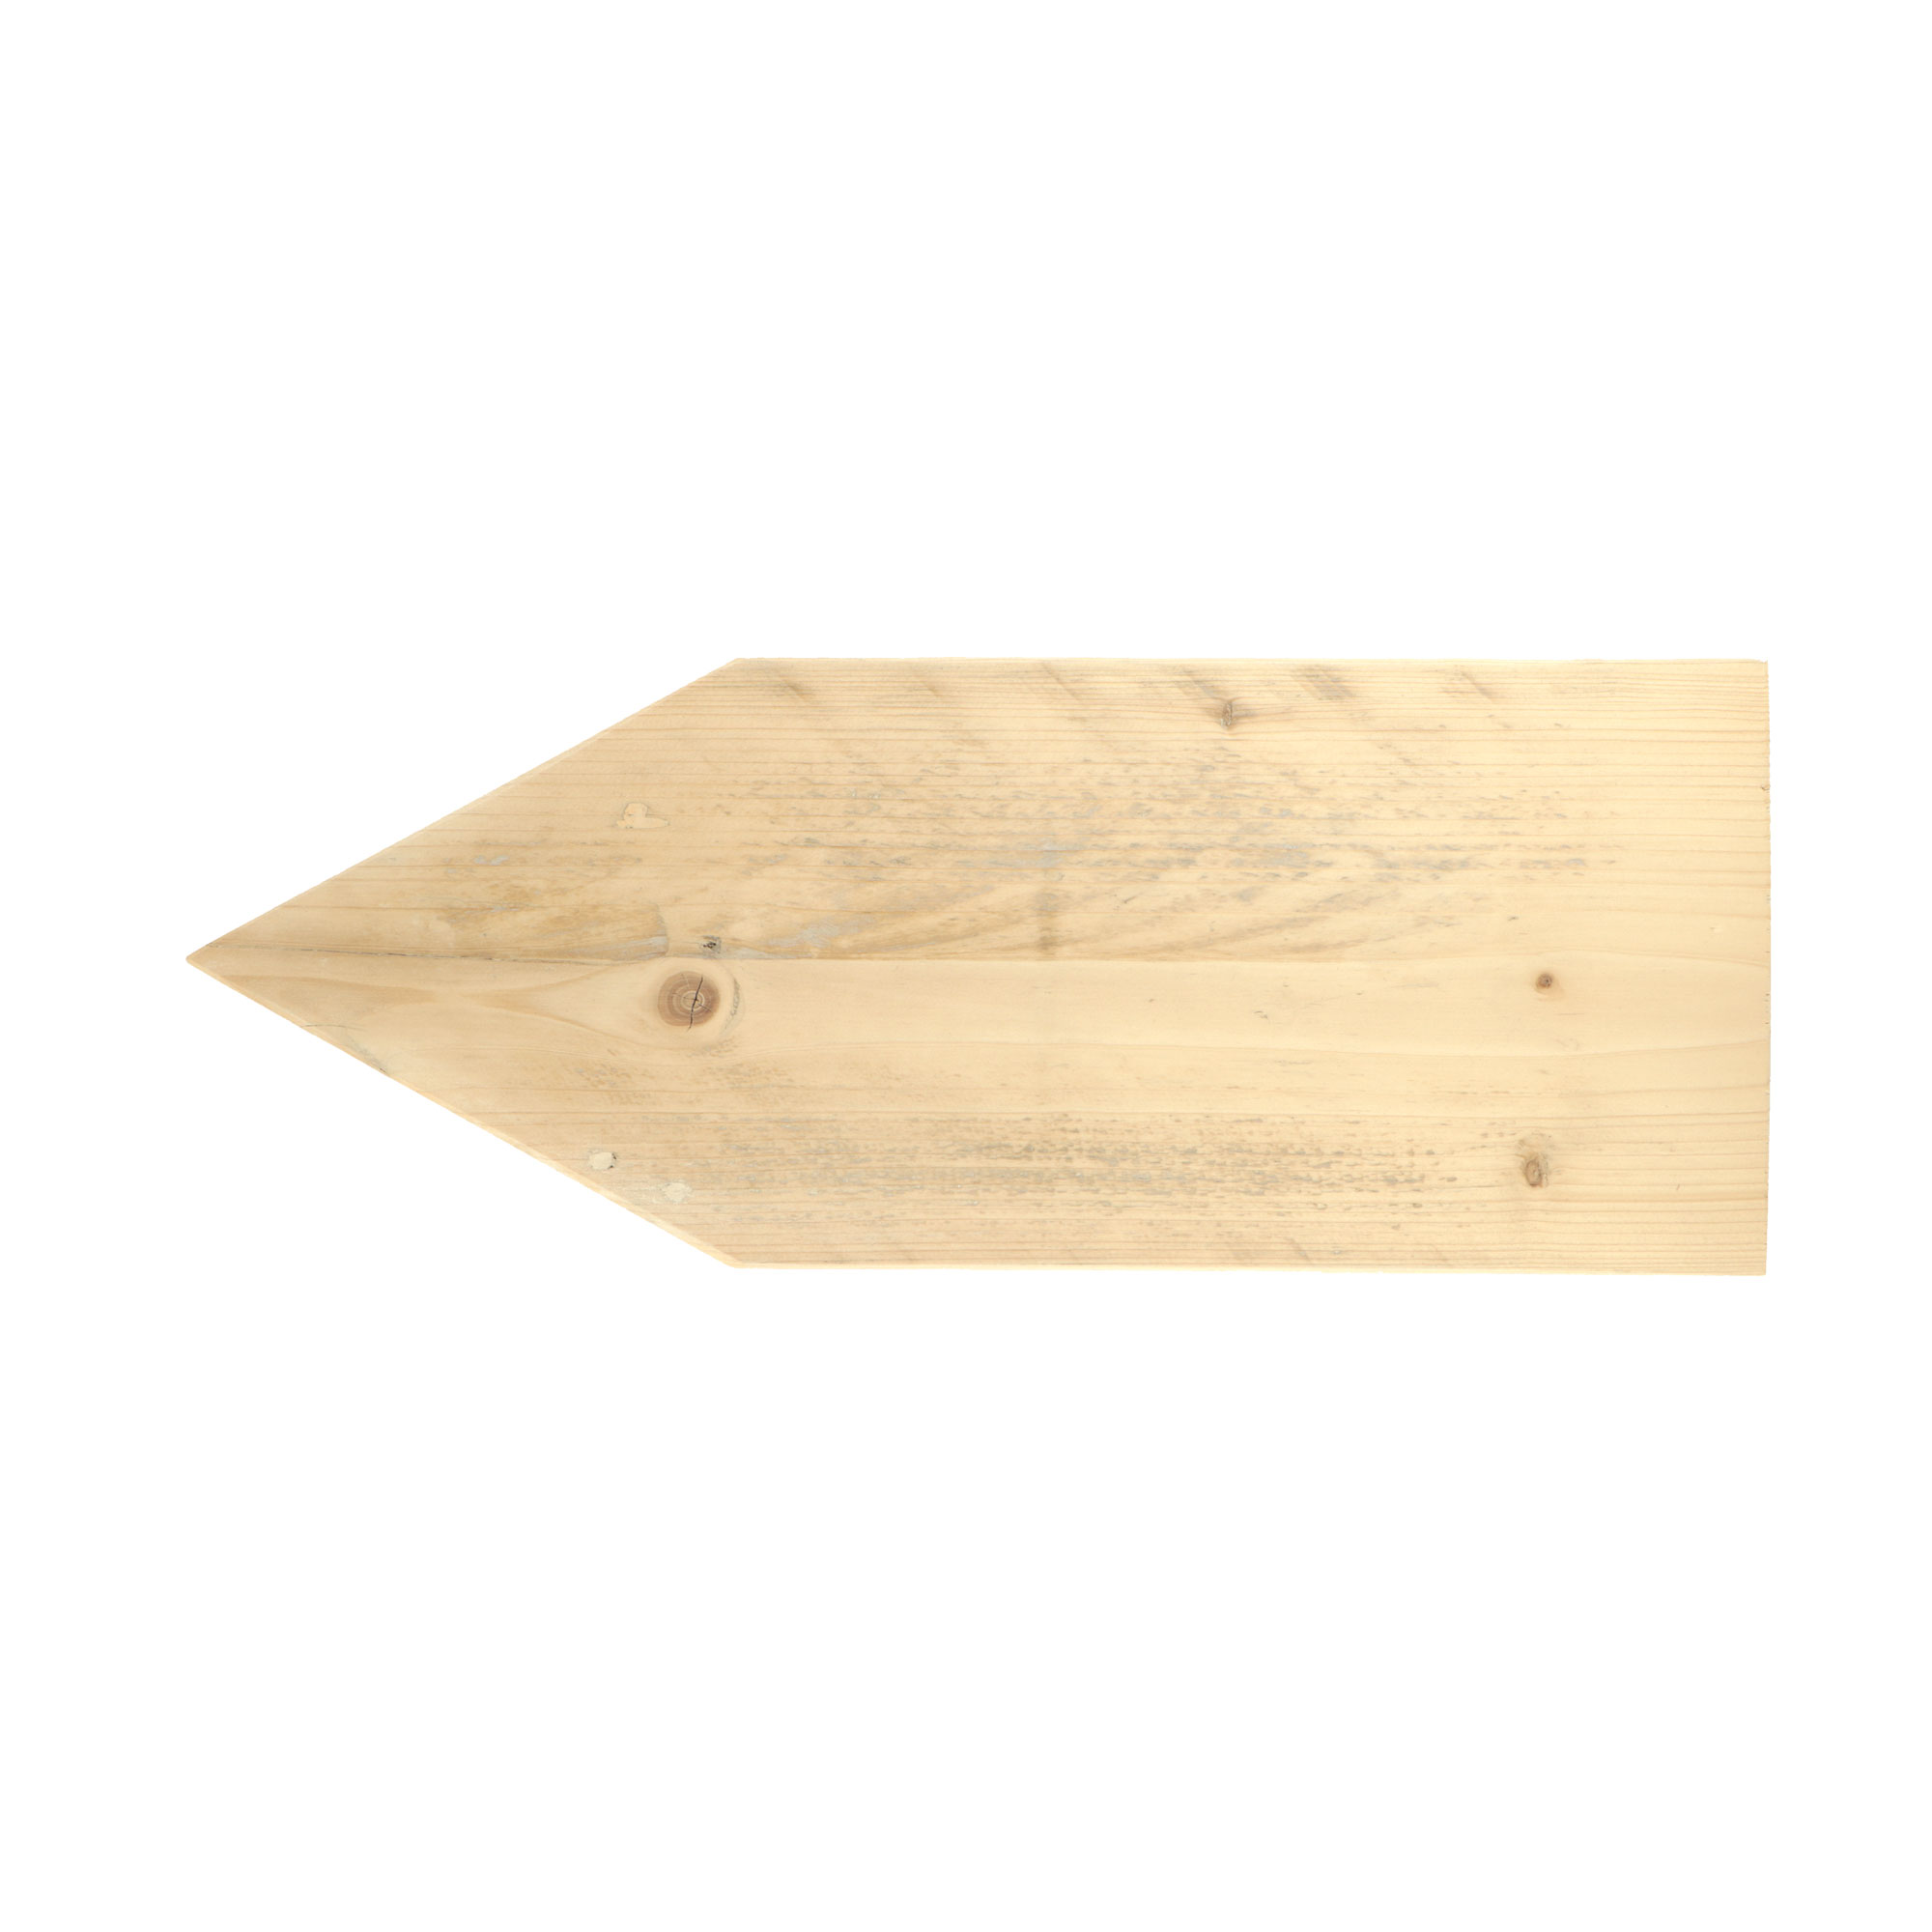 Afbeelding voor categorie Planken